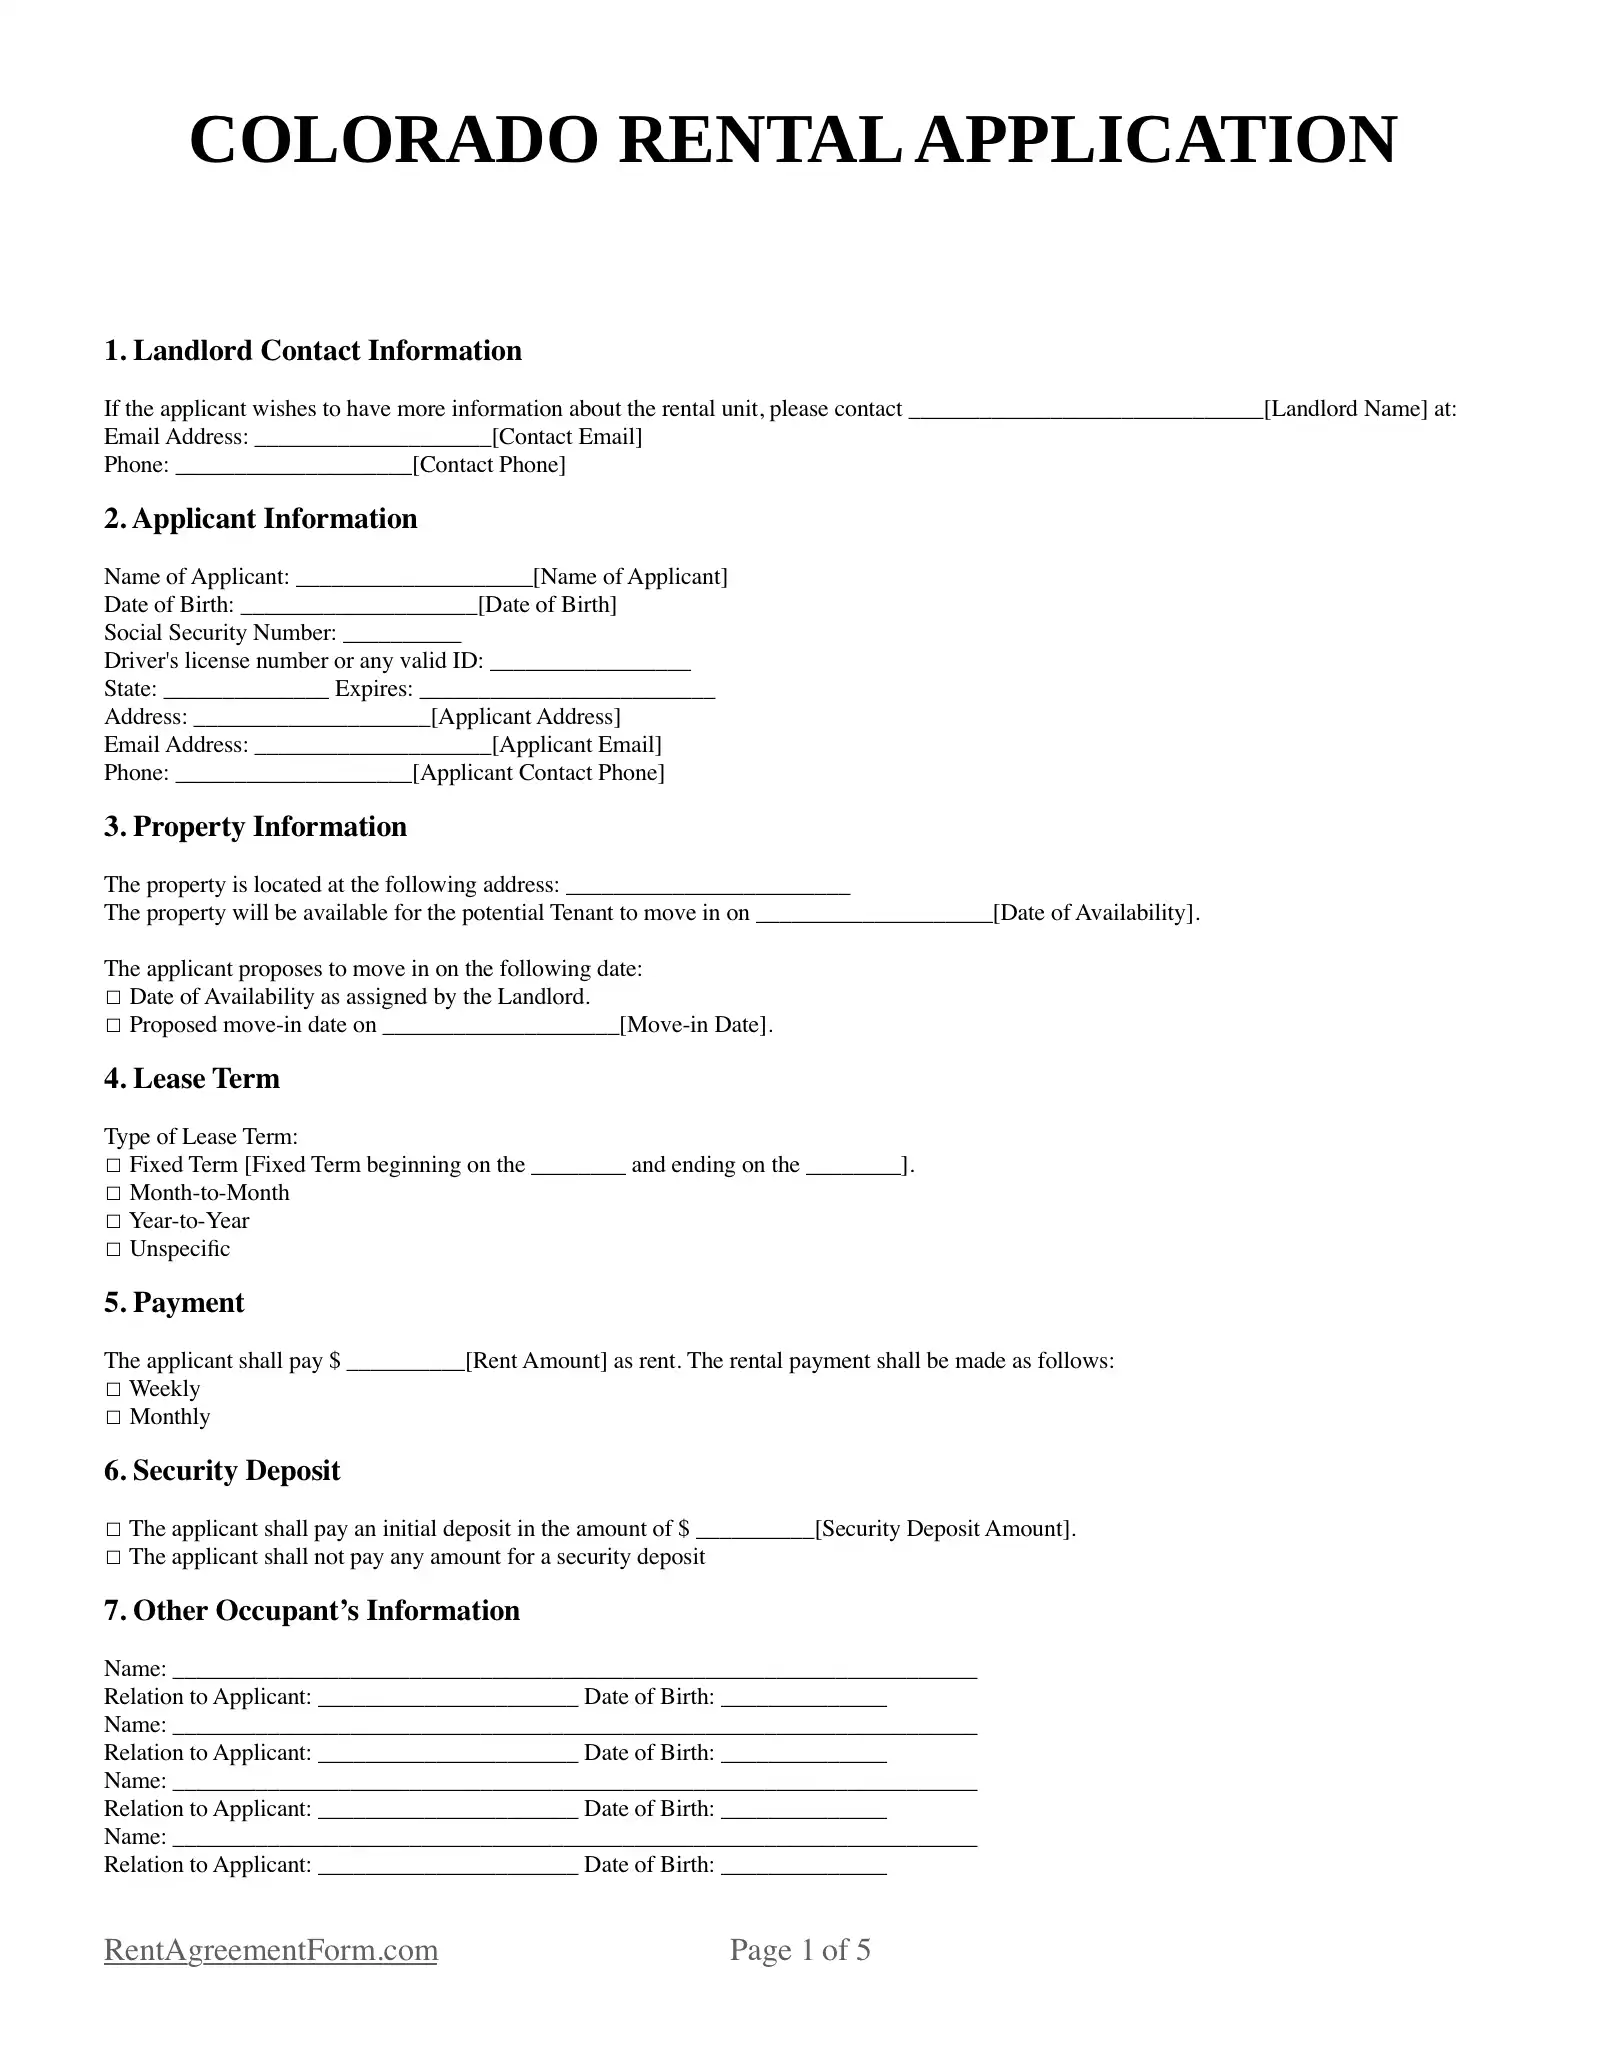 Colorado Rental Application Sample